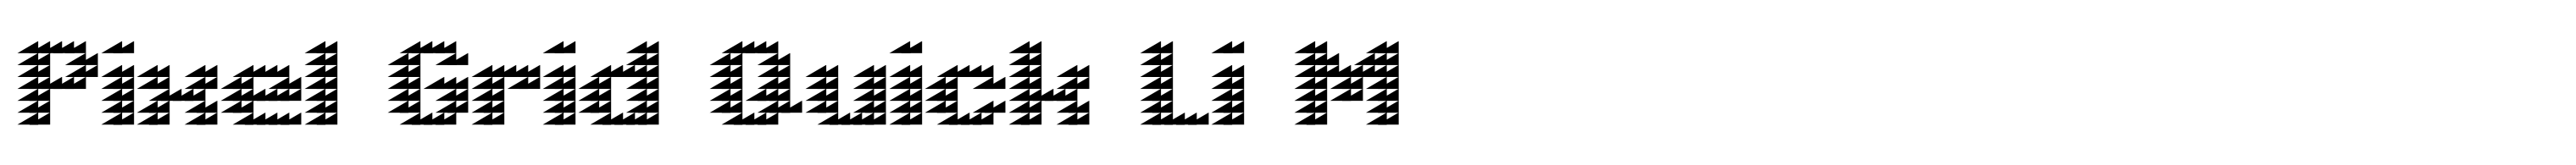 Pixel Grid Quick Li M